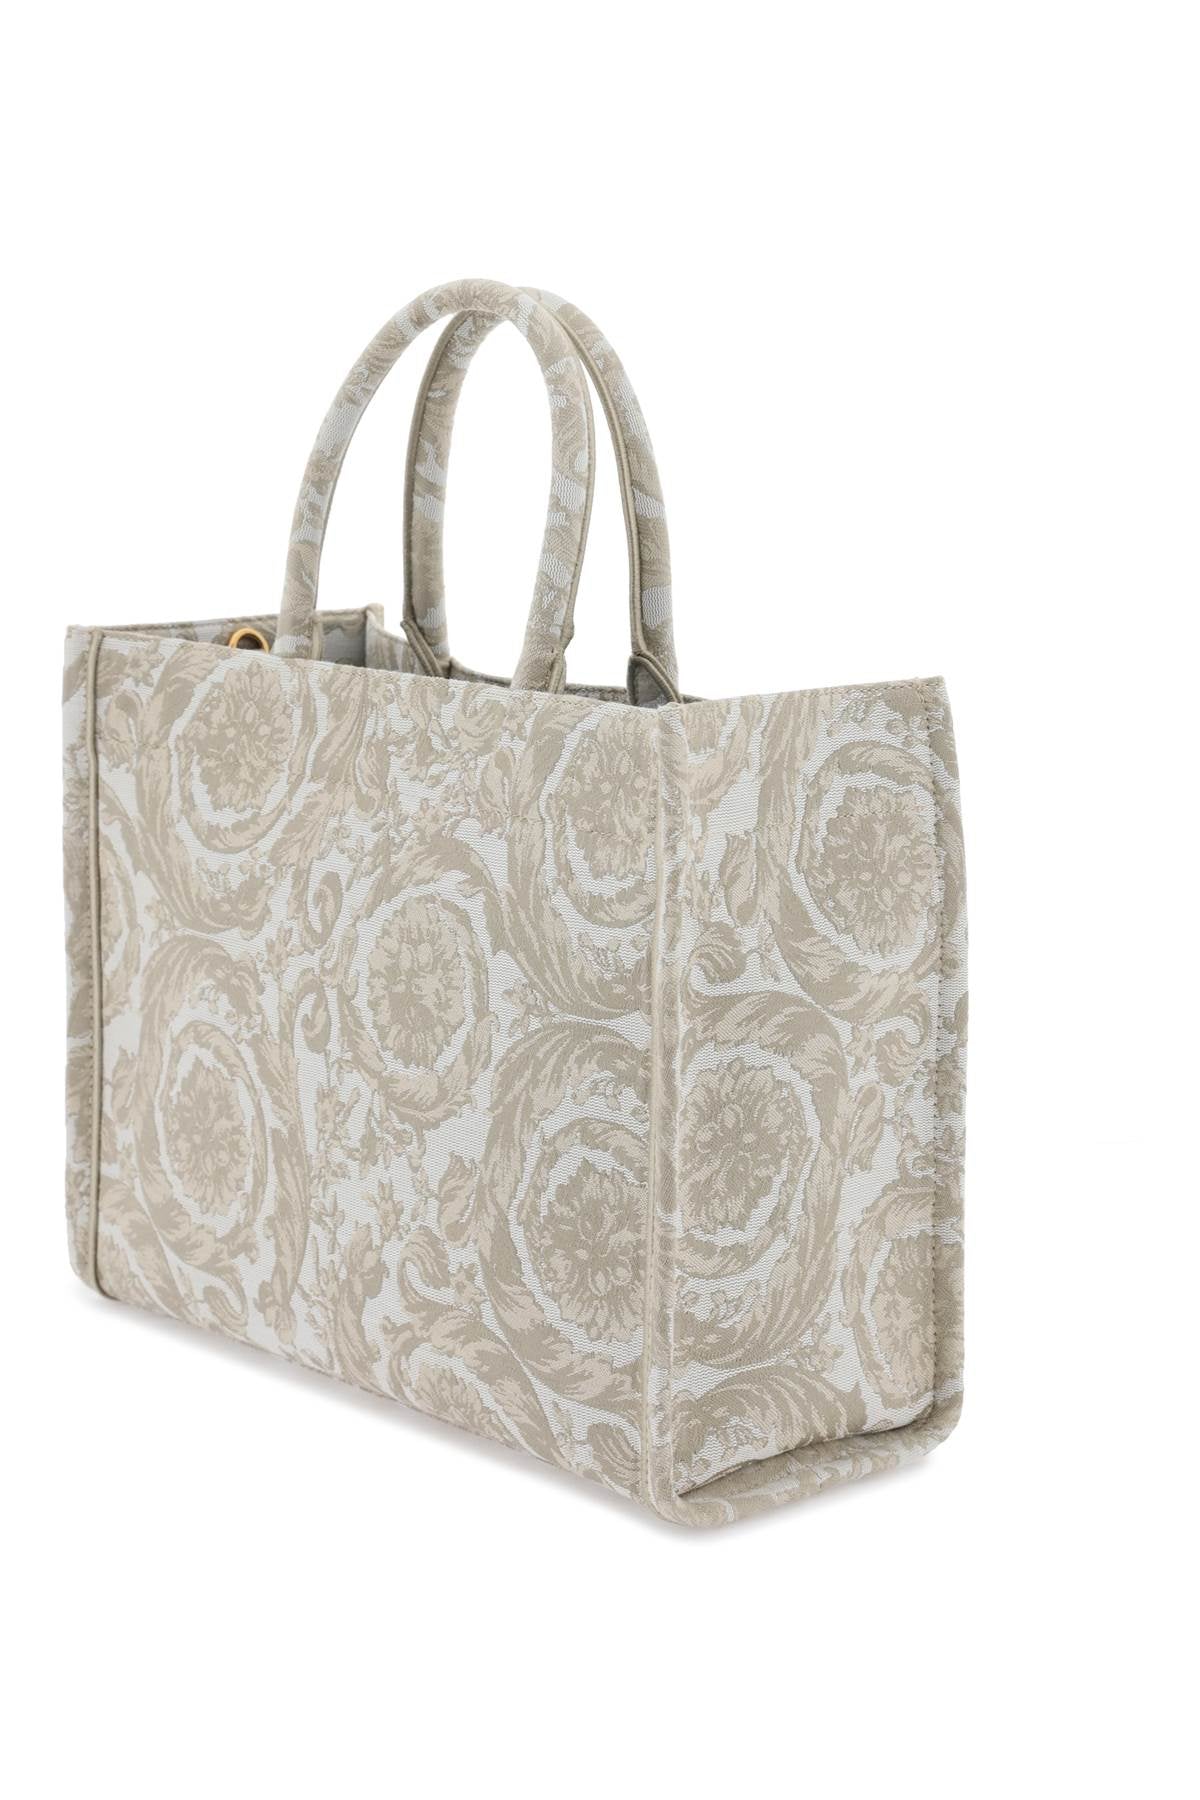 VERSACE ATHENA Baroque Tote Handbag Handbag